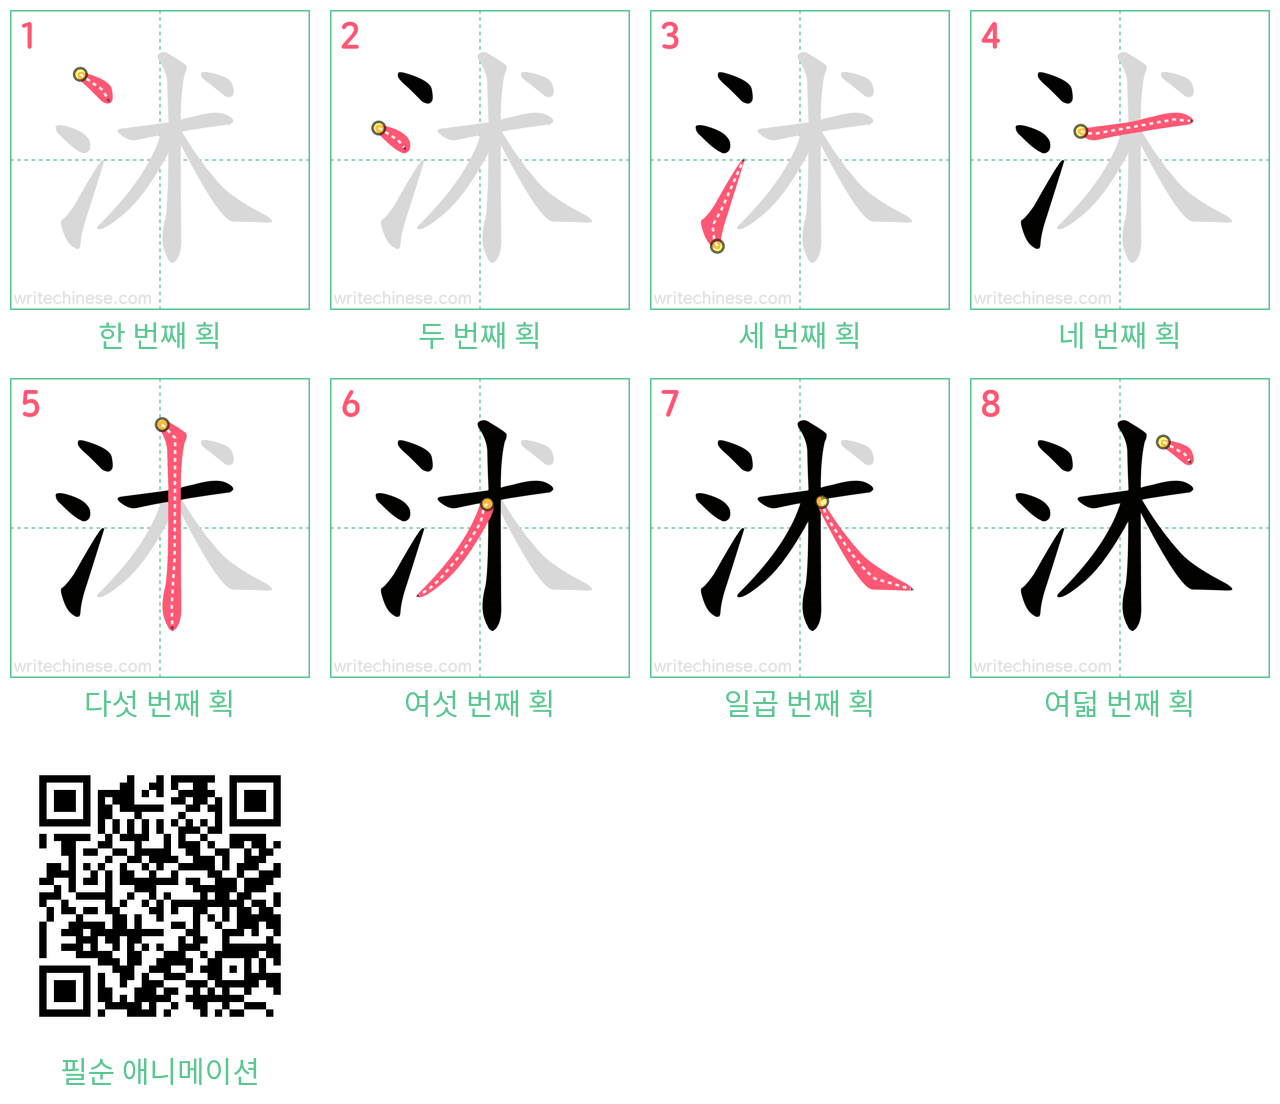 沭 step-by-step stroke order diagrams